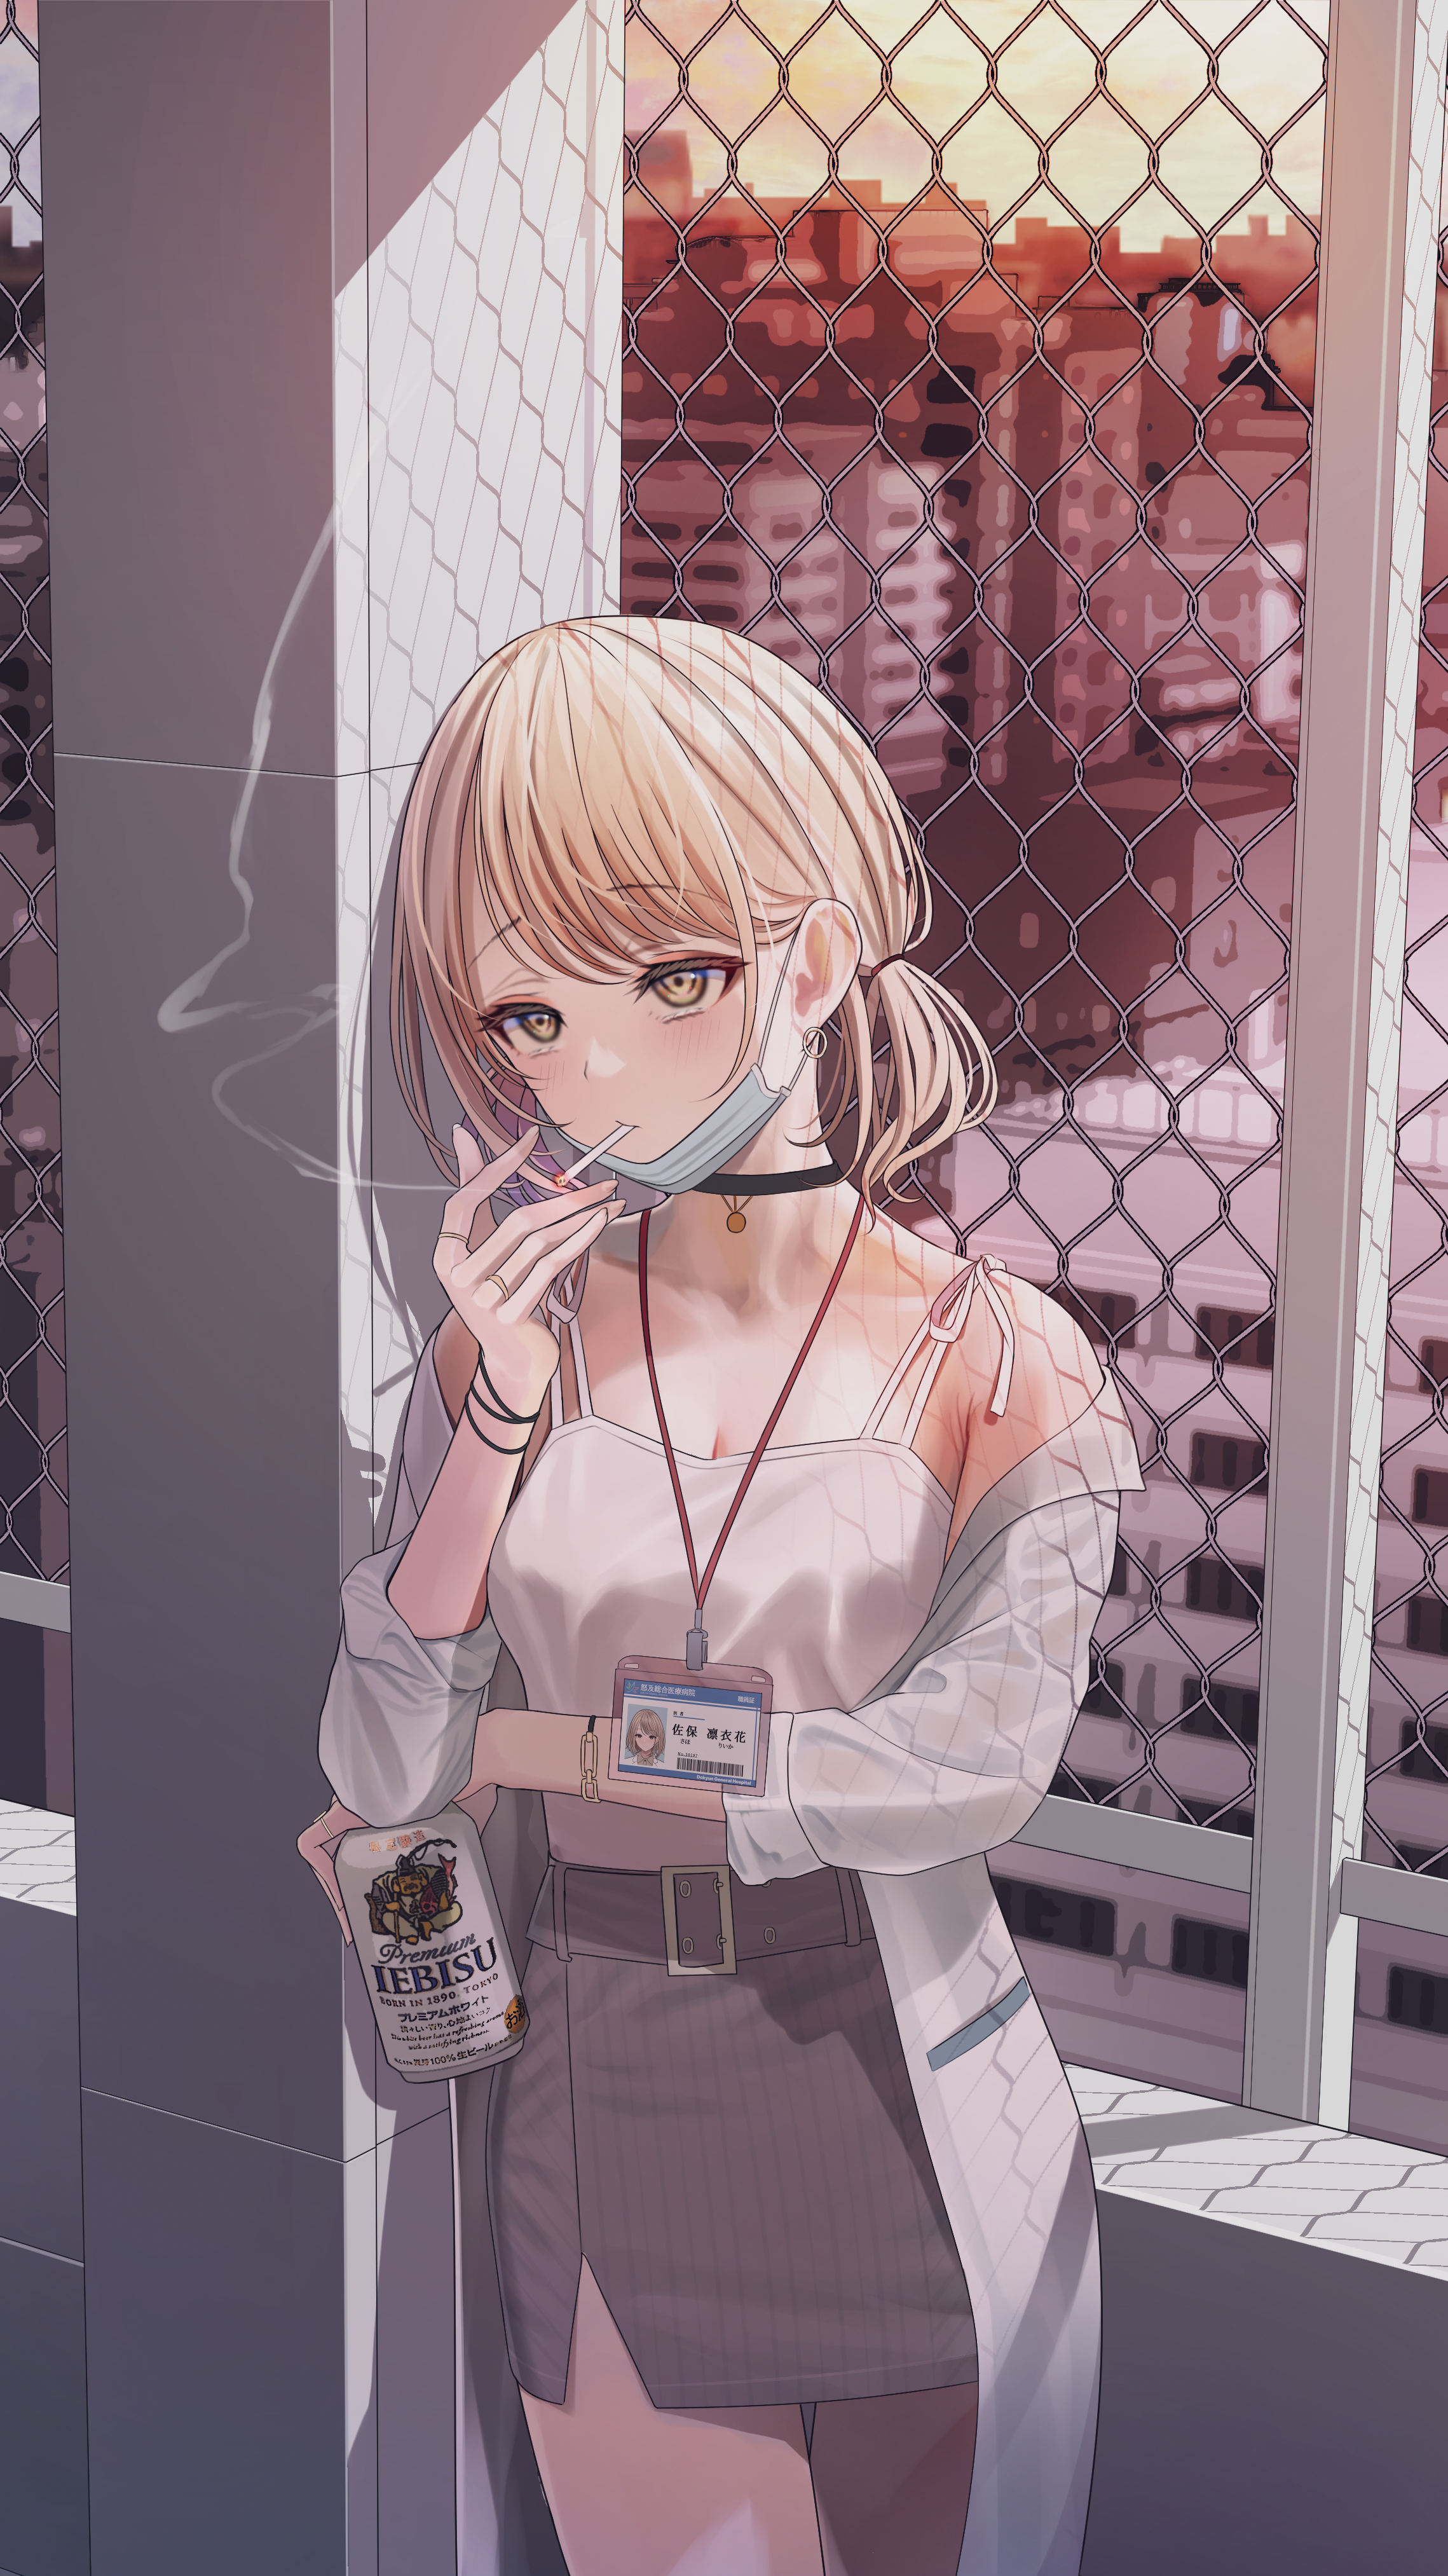 Anime 2278x4052 anime anime girls blonde yellow eyes smoking cigarettes mask beer